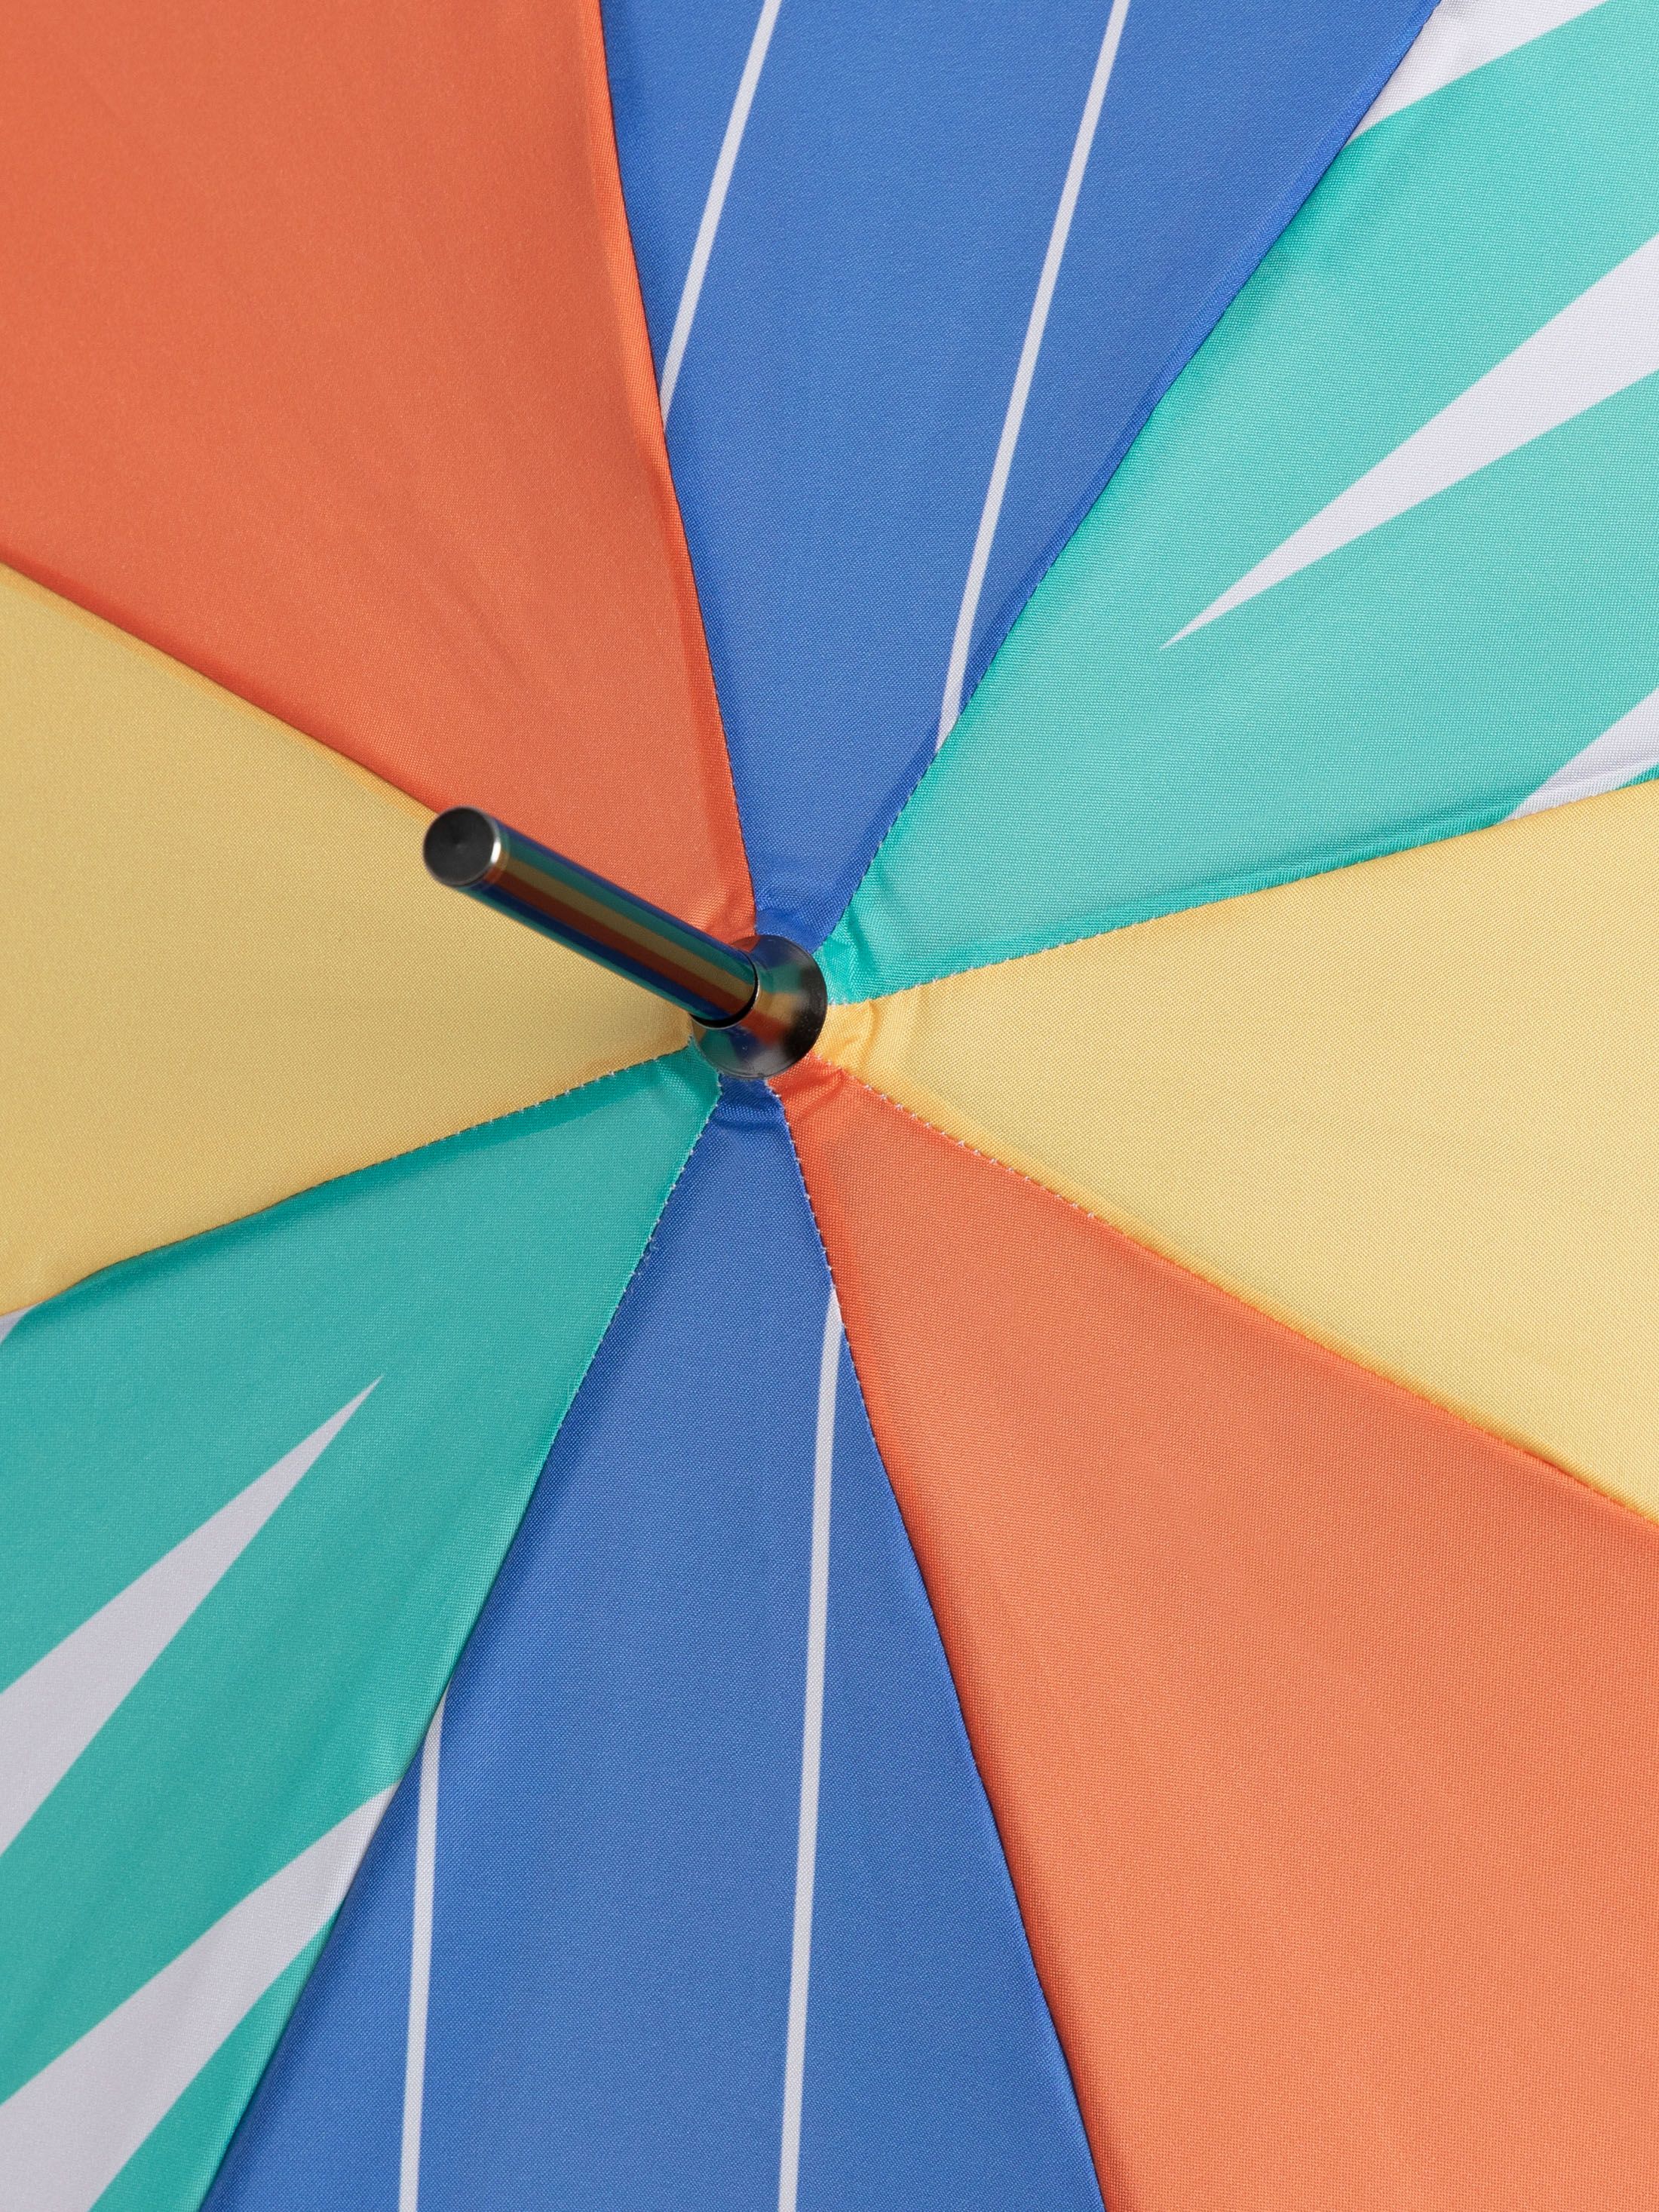 design your own umbrellas